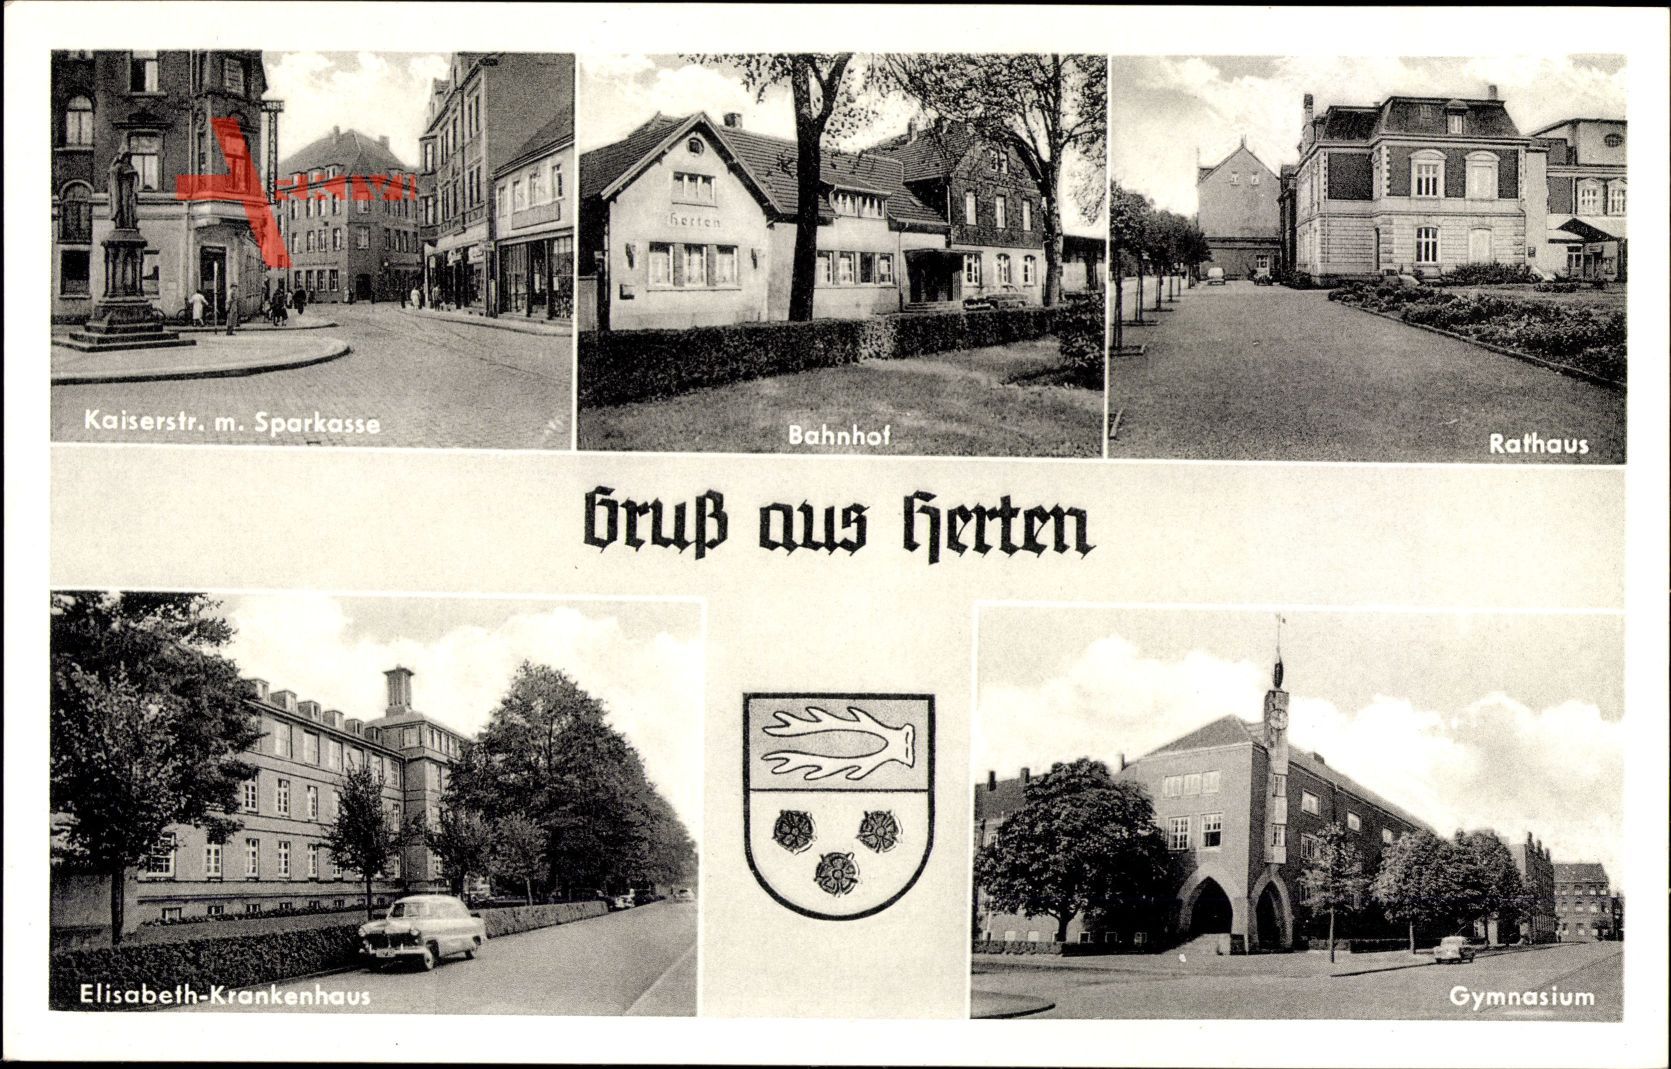 Herten, Eilsabeth Krankenhaus, Gymnasium, Rathaus, Kaiserstraße, Bahnhof